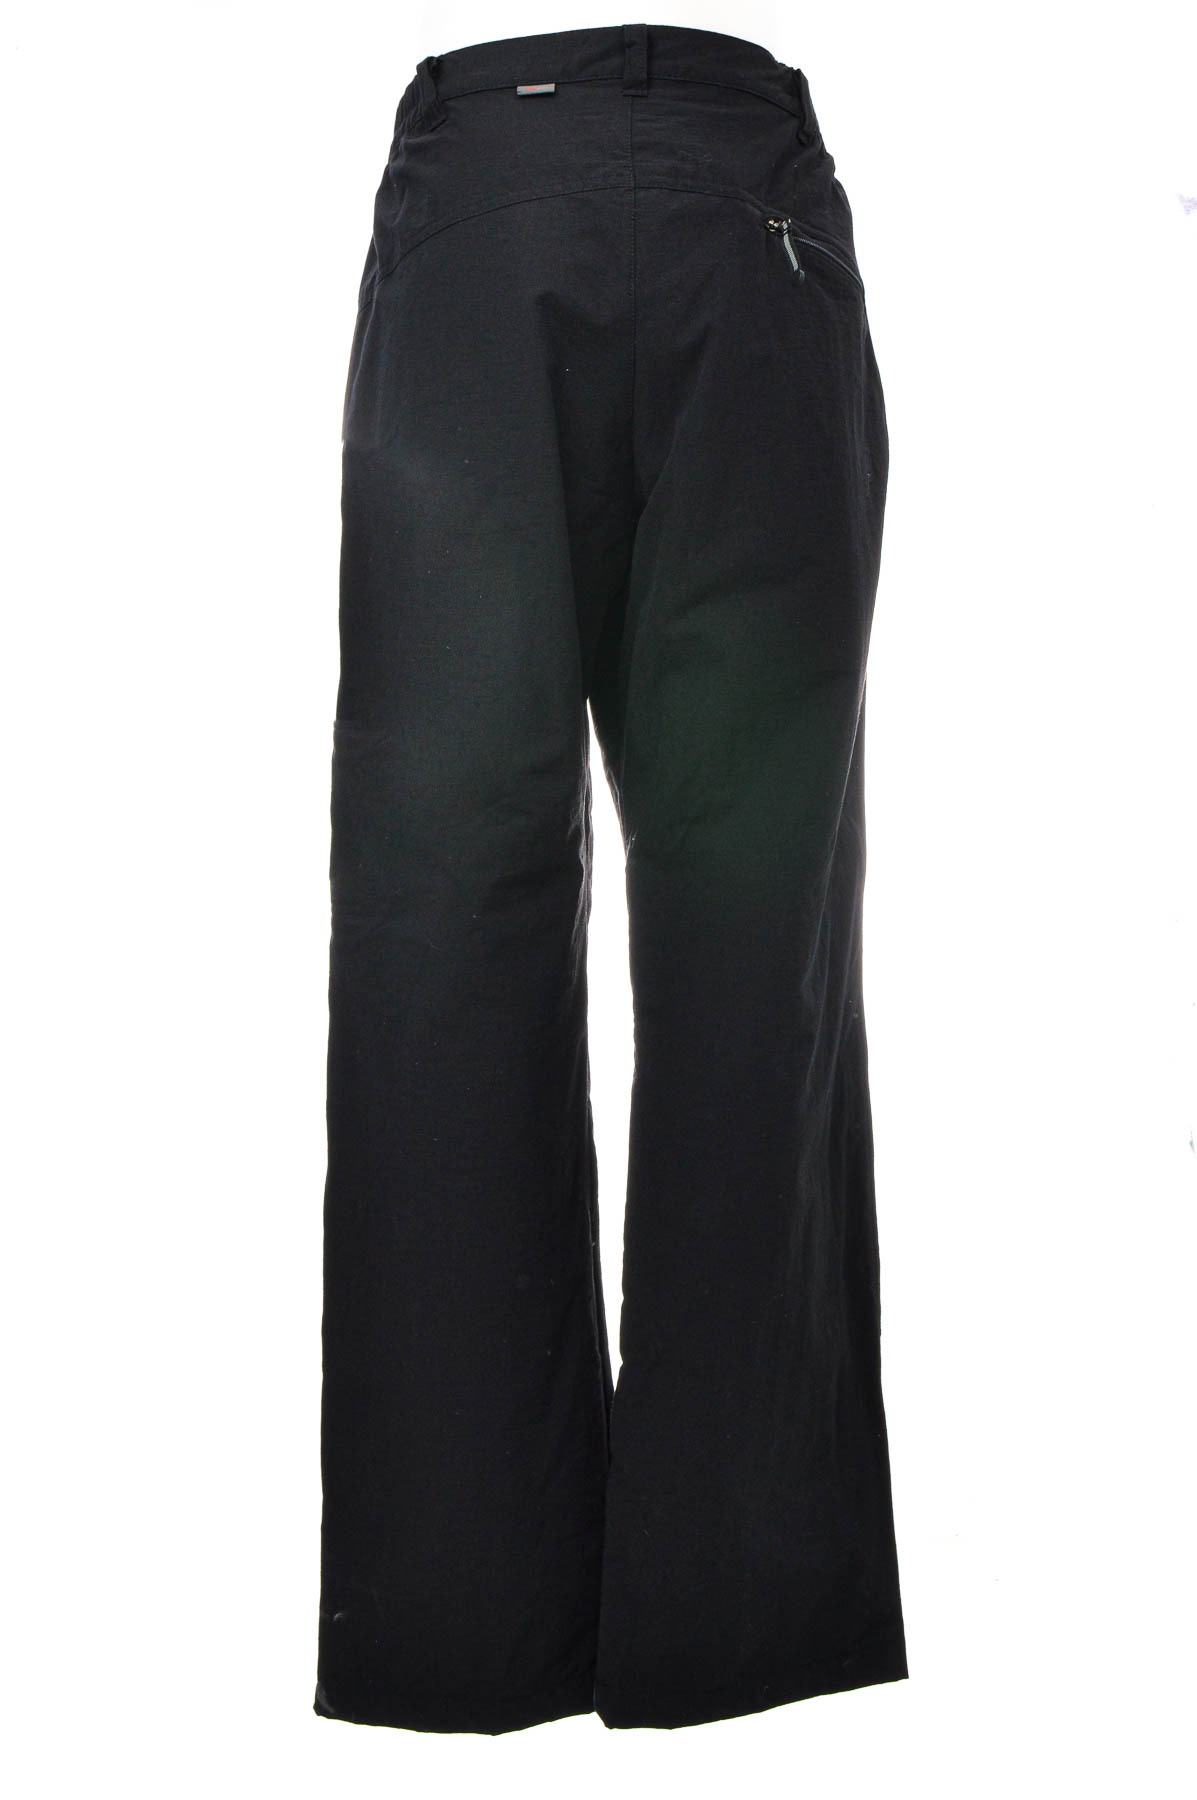 Pantalon pentru bărbați - H52H - 1